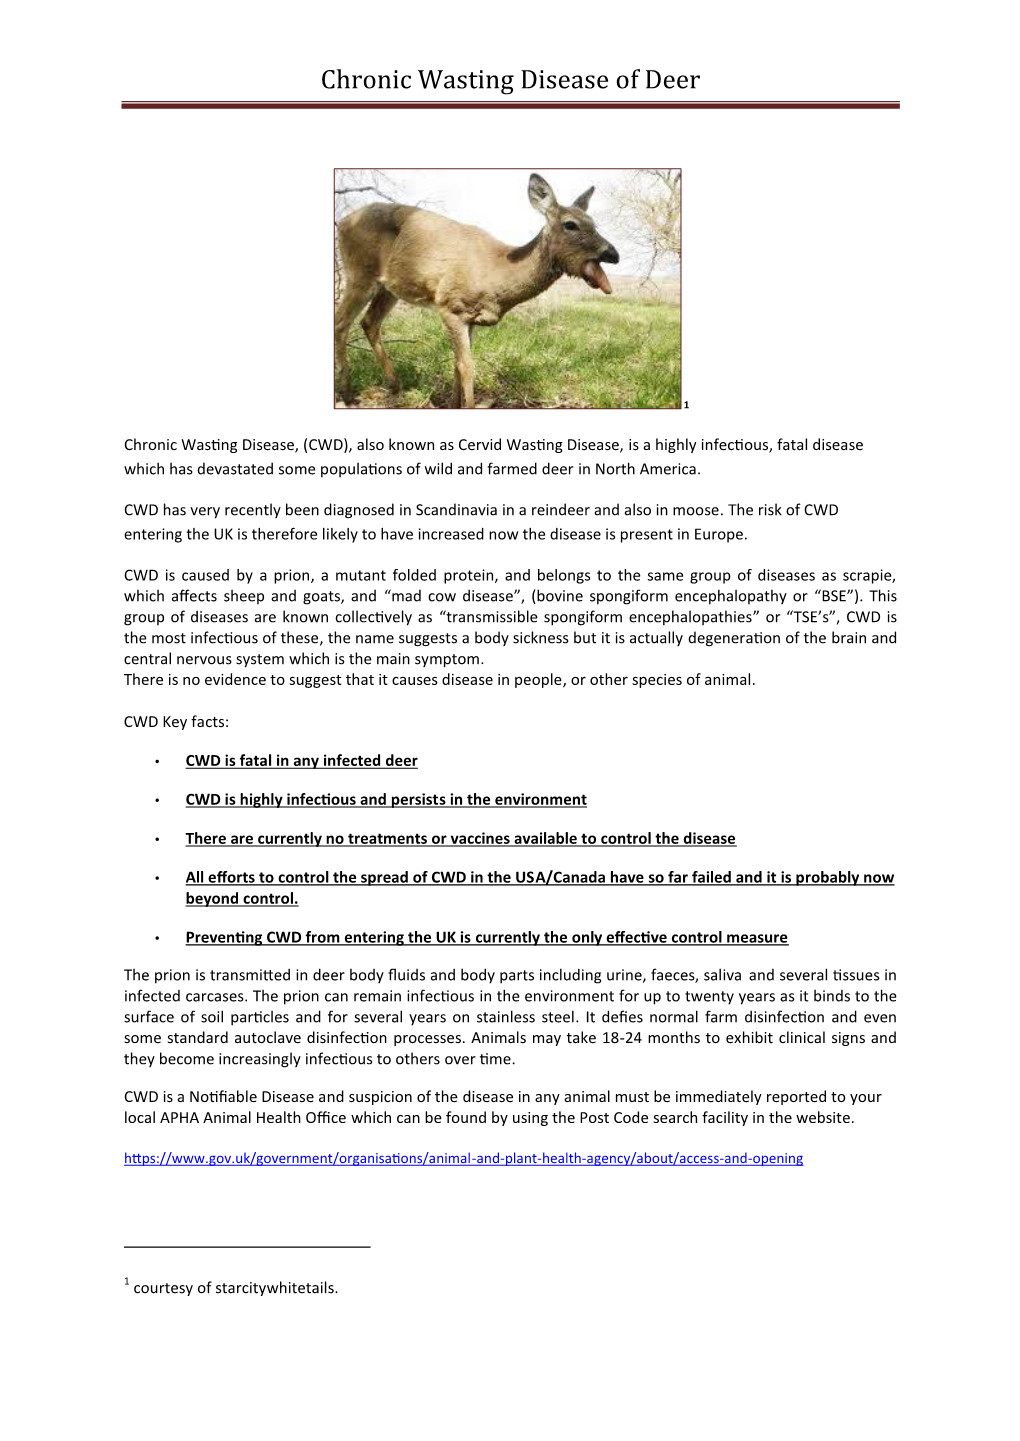 Chronic Wasting Disease of Deer Leaflet